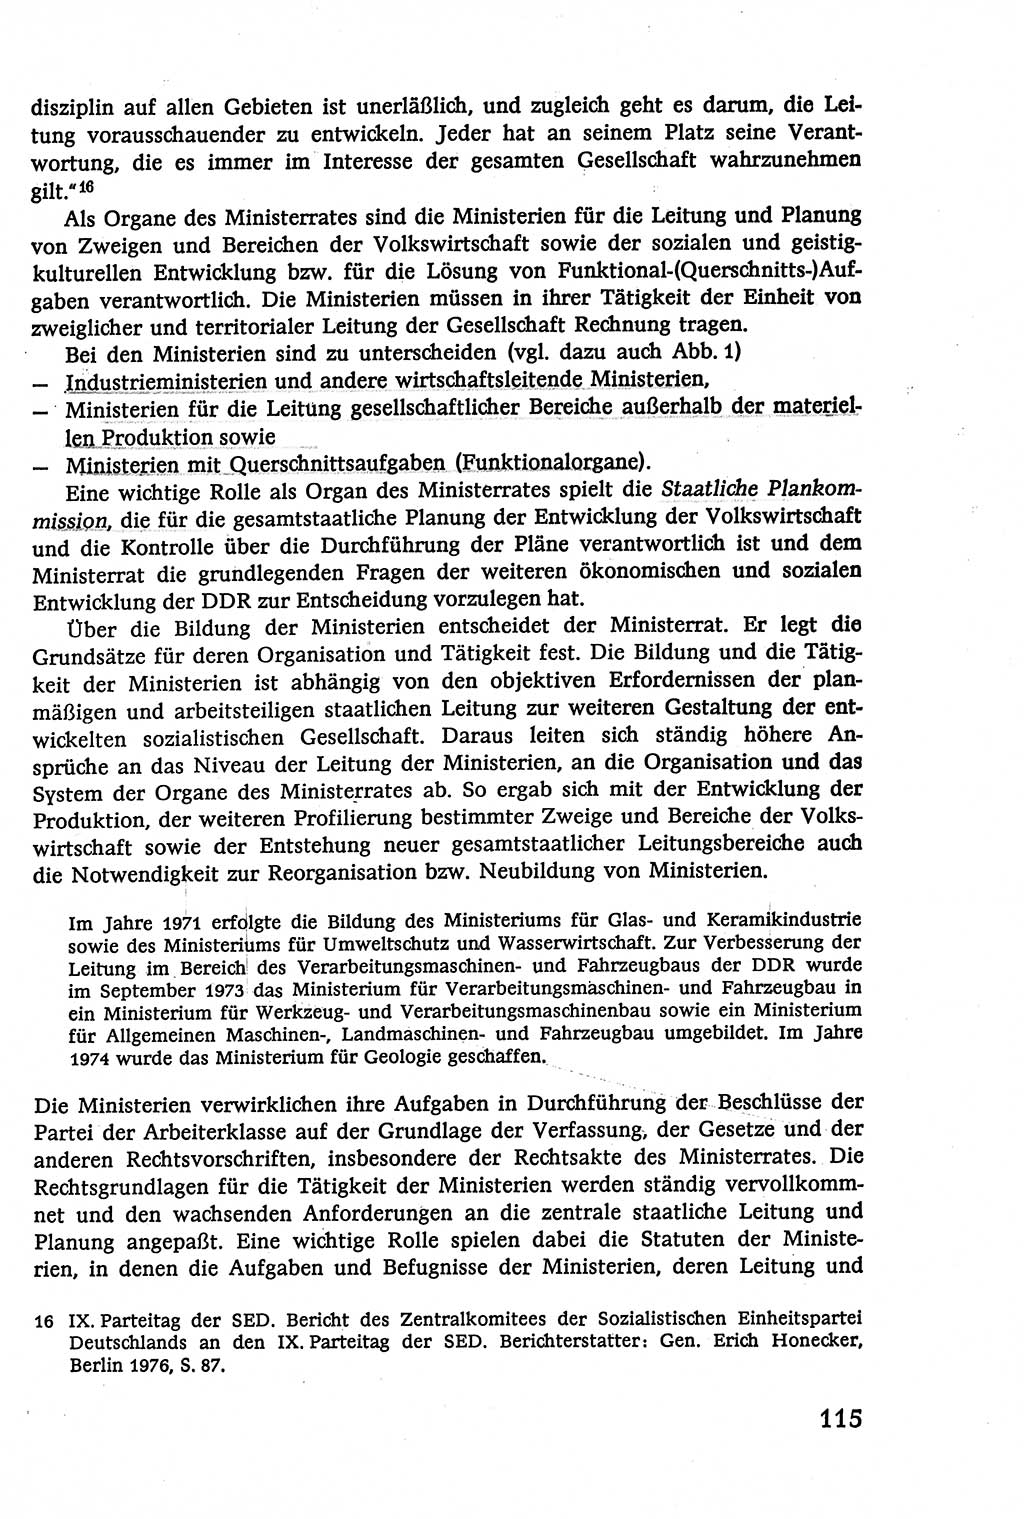 Verwaltungsrecht [Deutsche Demokratische Republik (DDR)], Lehrbuch 1979, Seite 115 (Verw.-R. DDR Lb. 1979, S. 115)